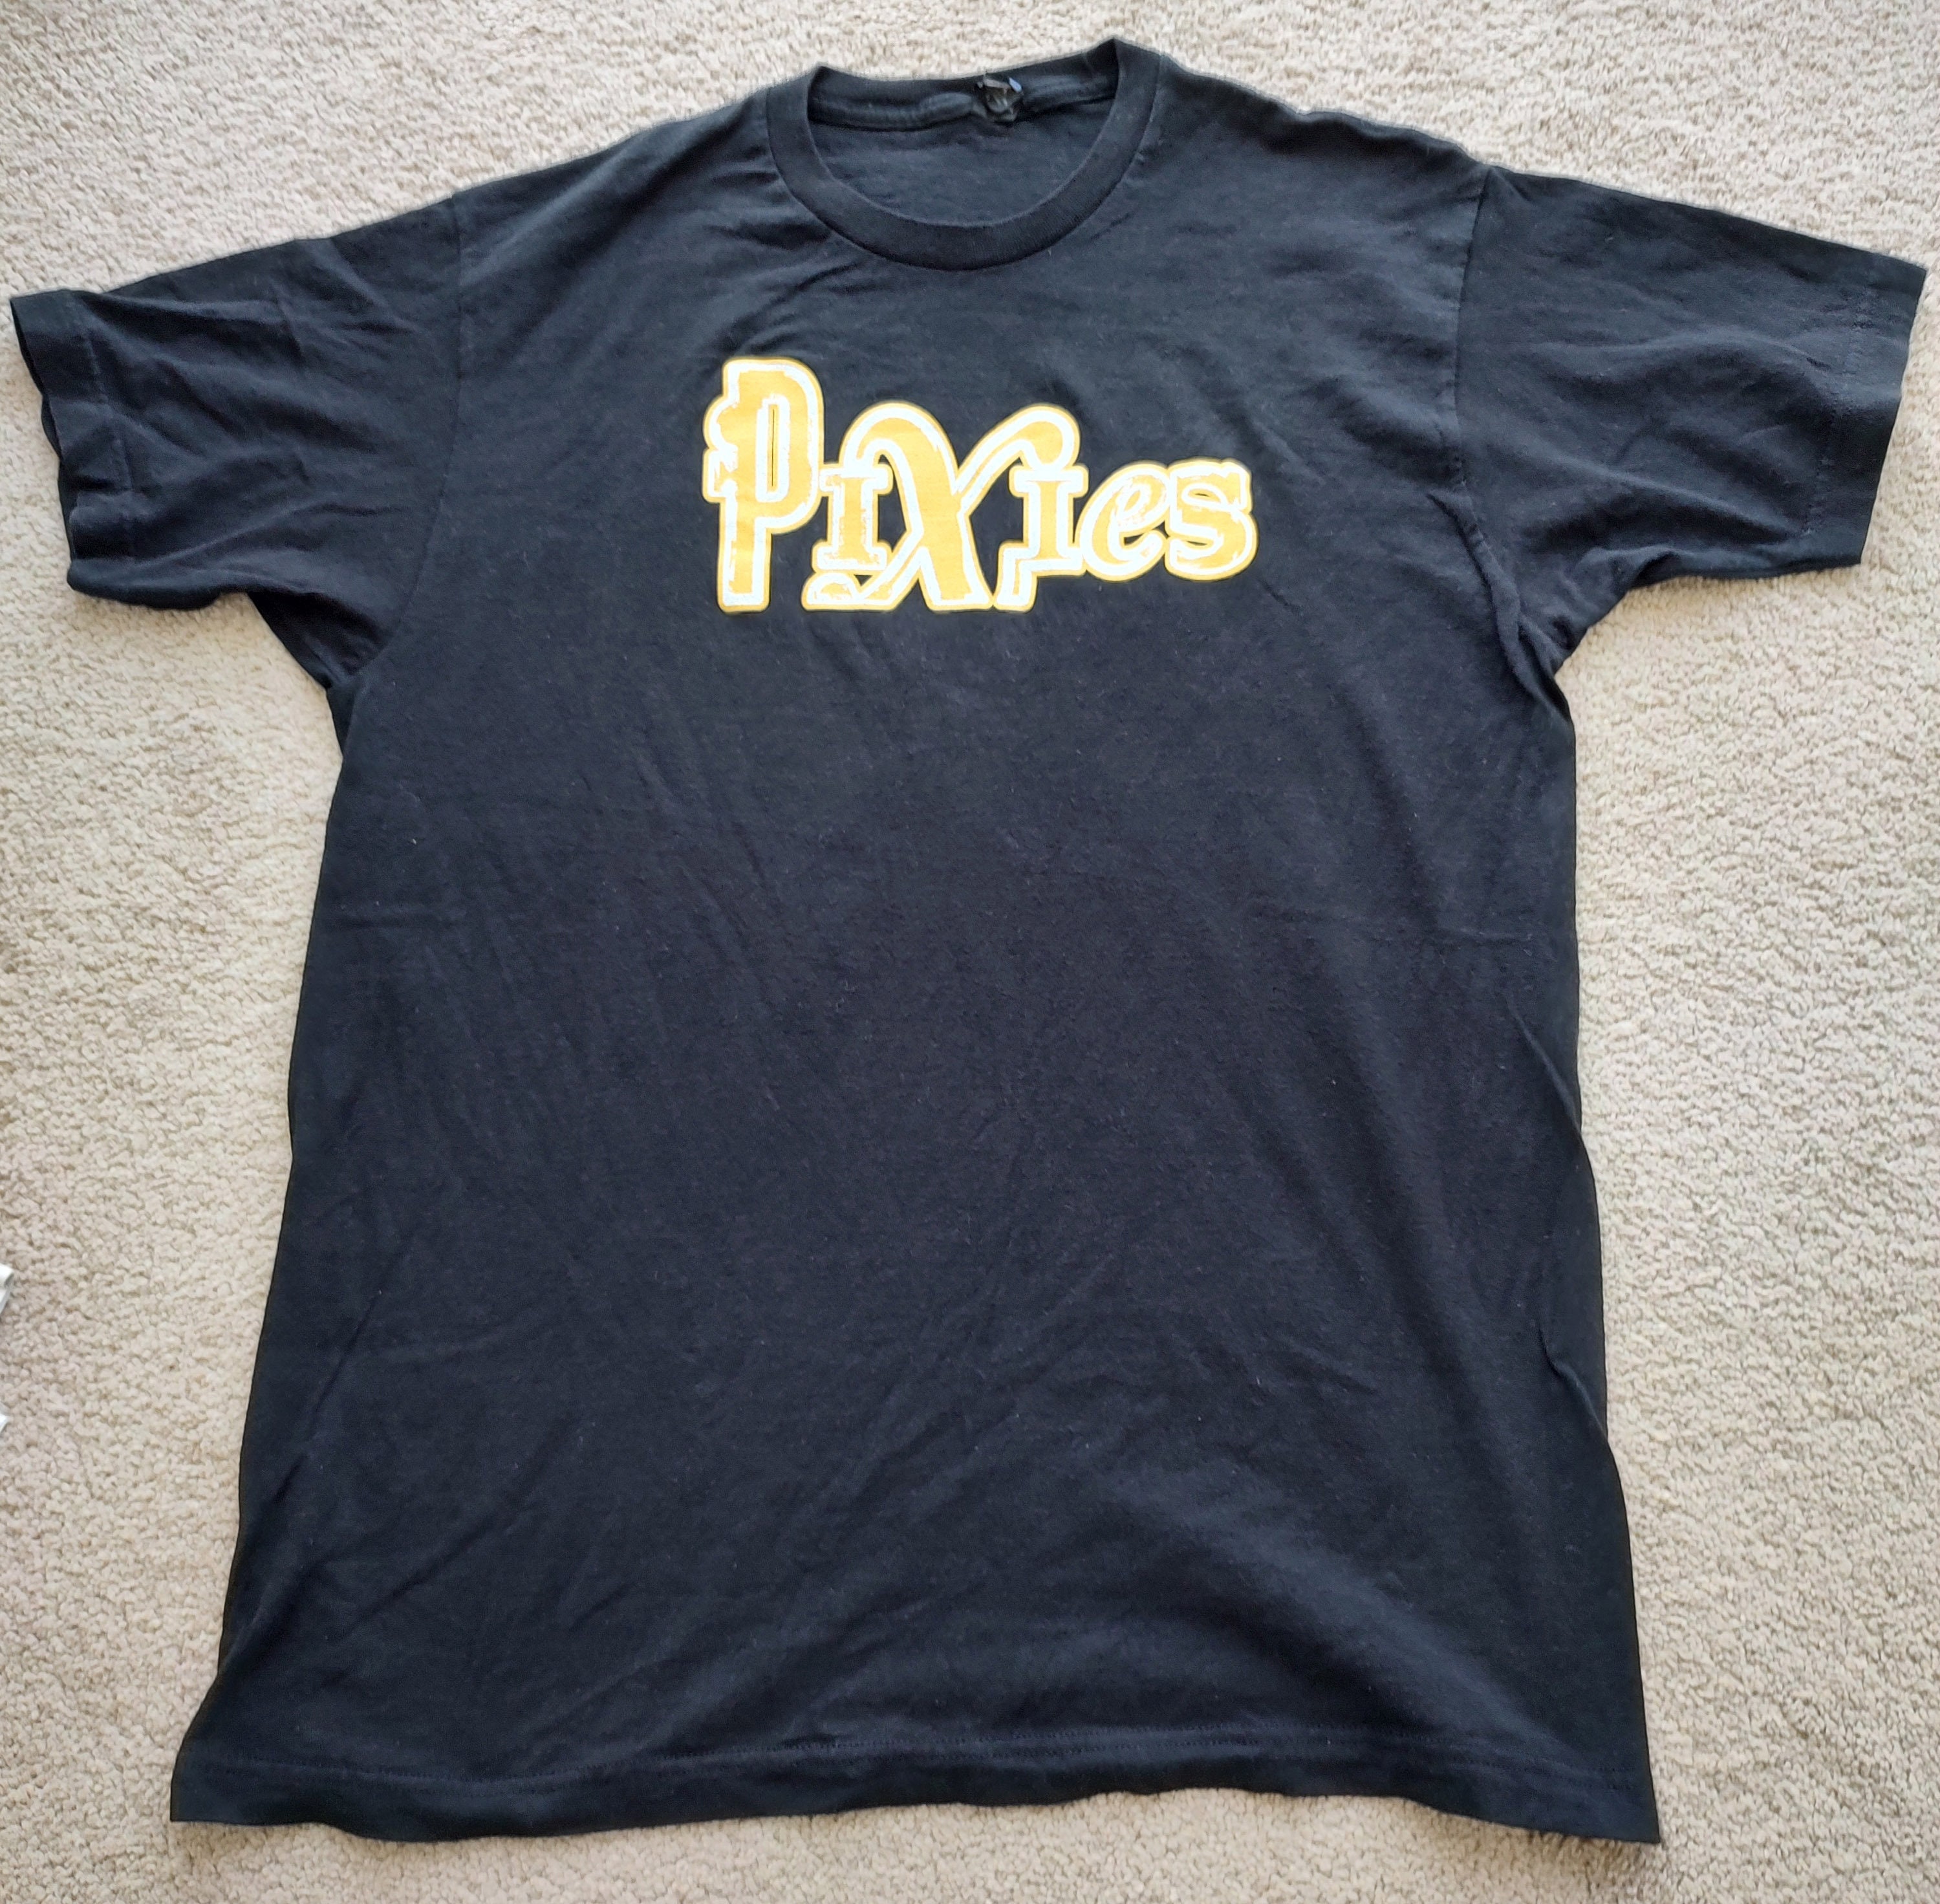 Pixies T-shirt - Etsy